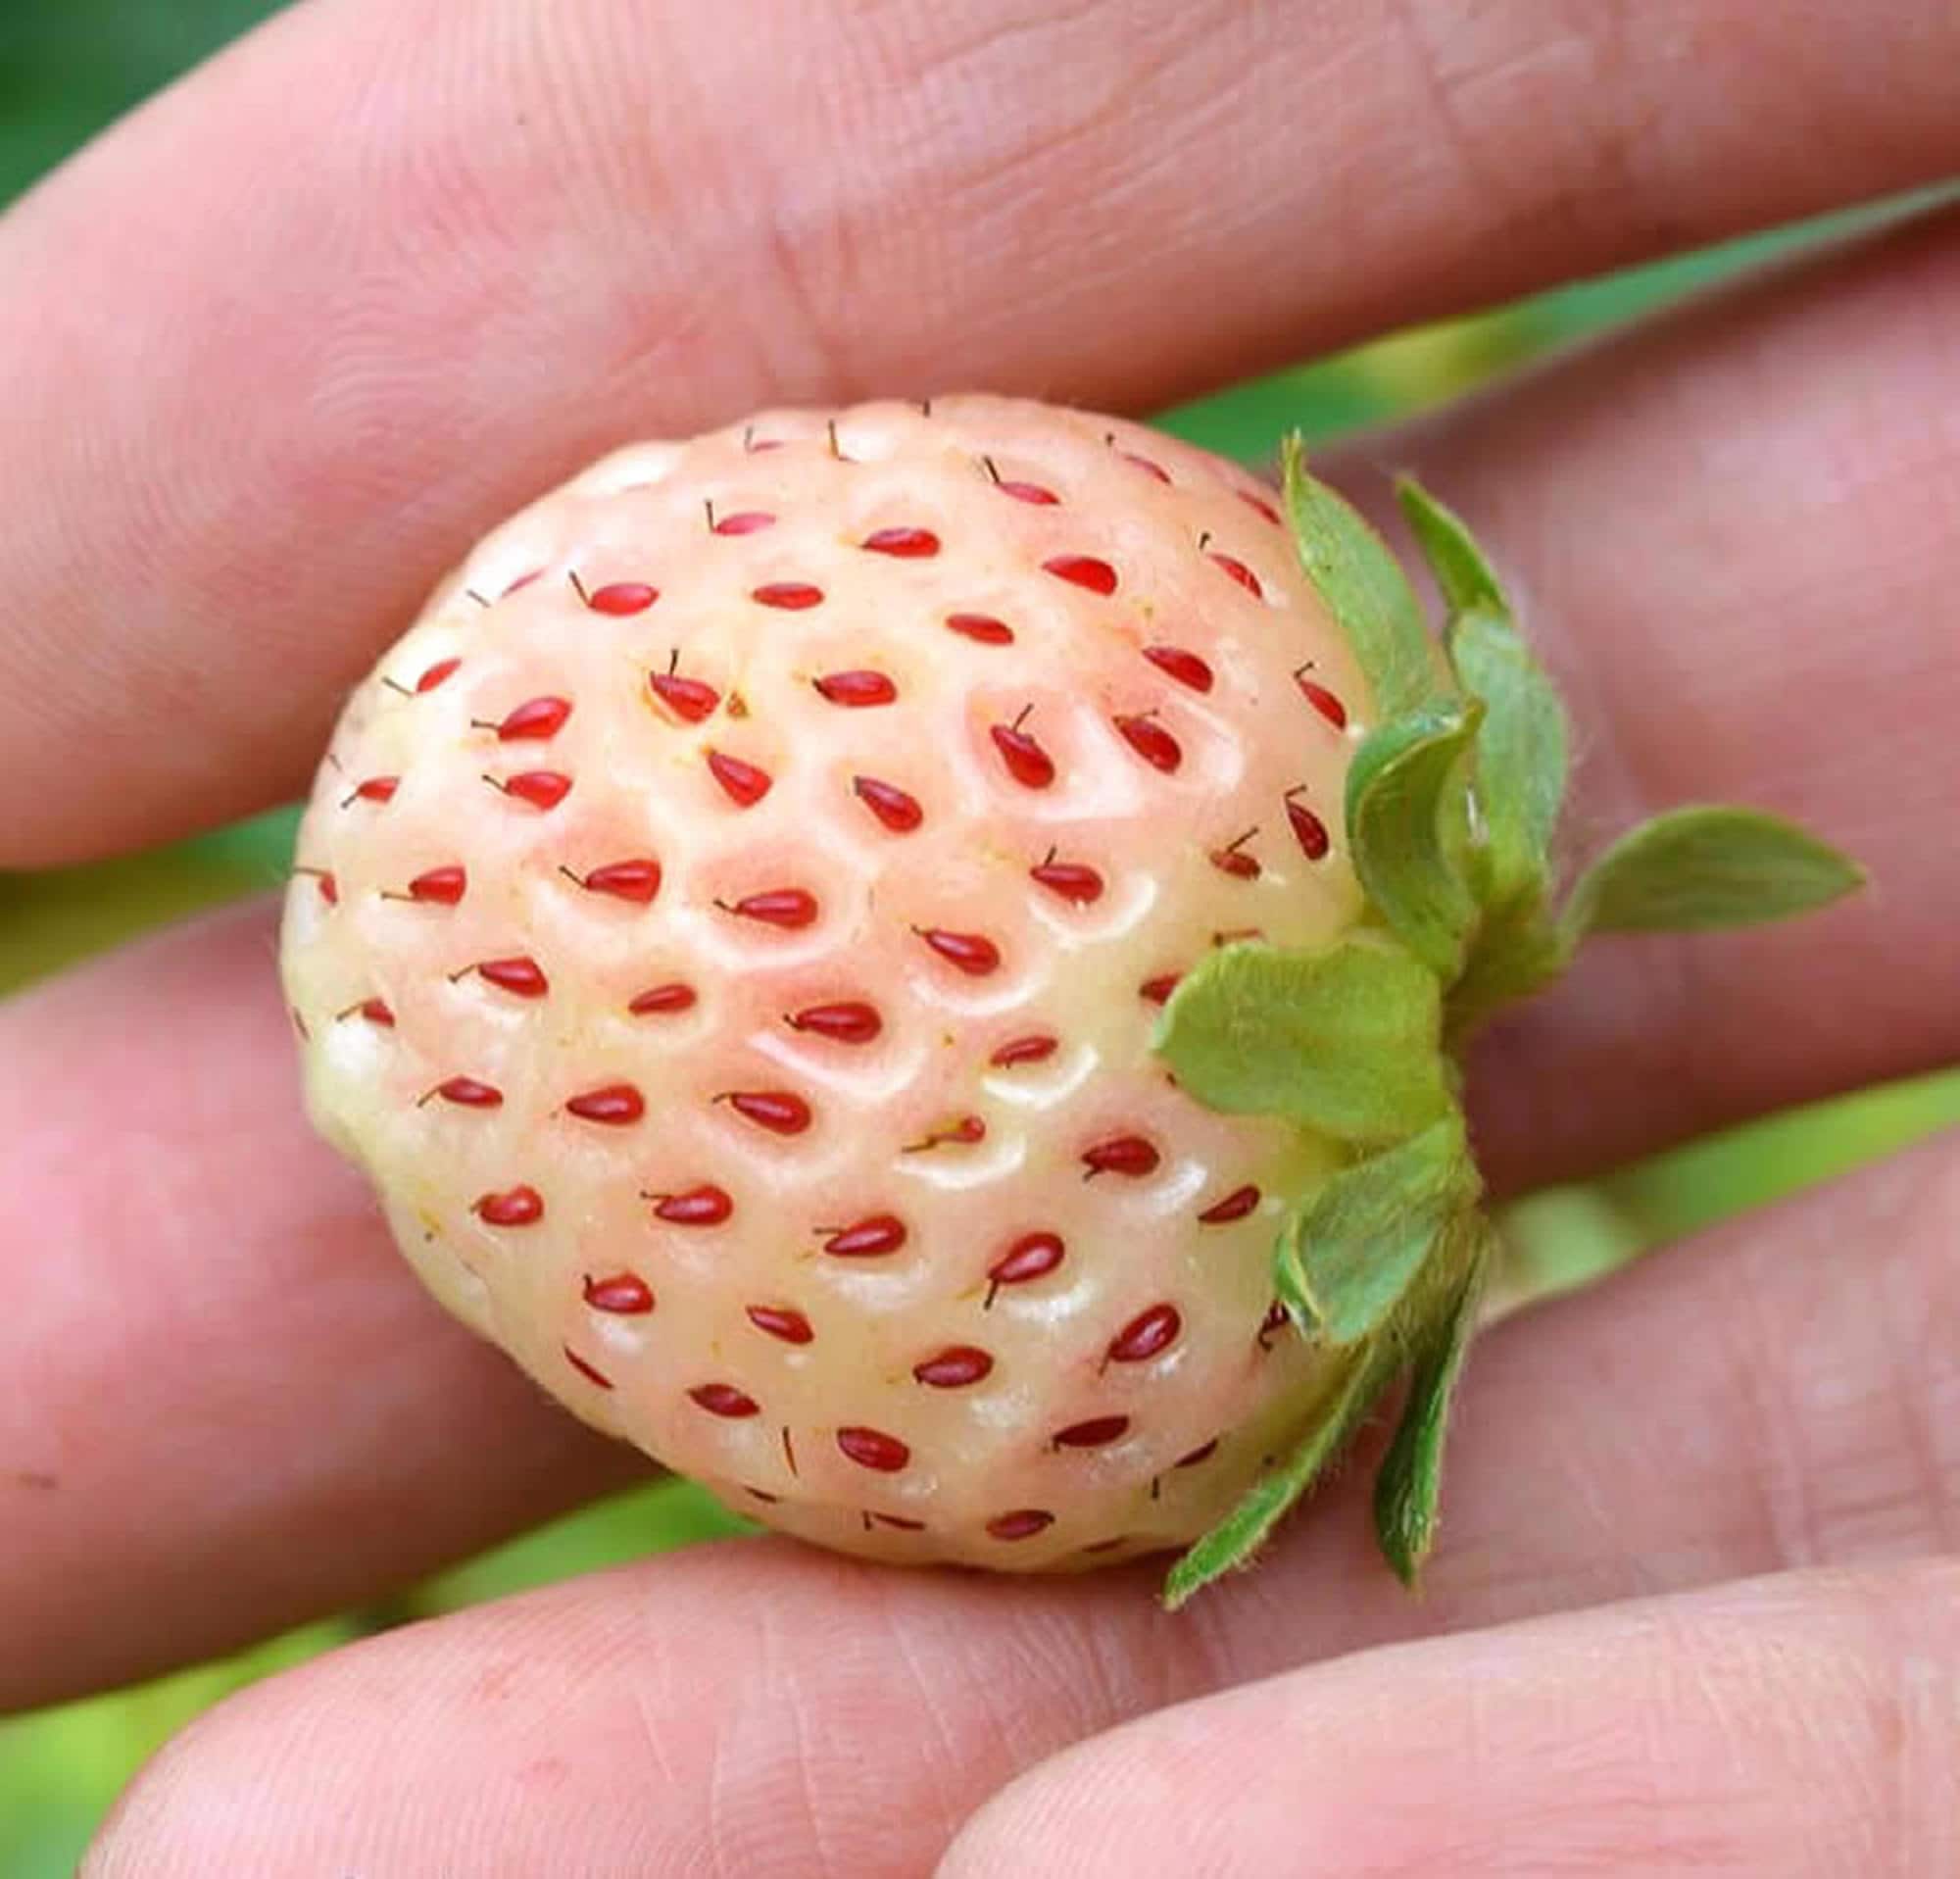 Graines de fraises de pin blanc x 300 fraises blanches gourmets graine de  plante de jardin insolite exotique sauvage héritage -  France